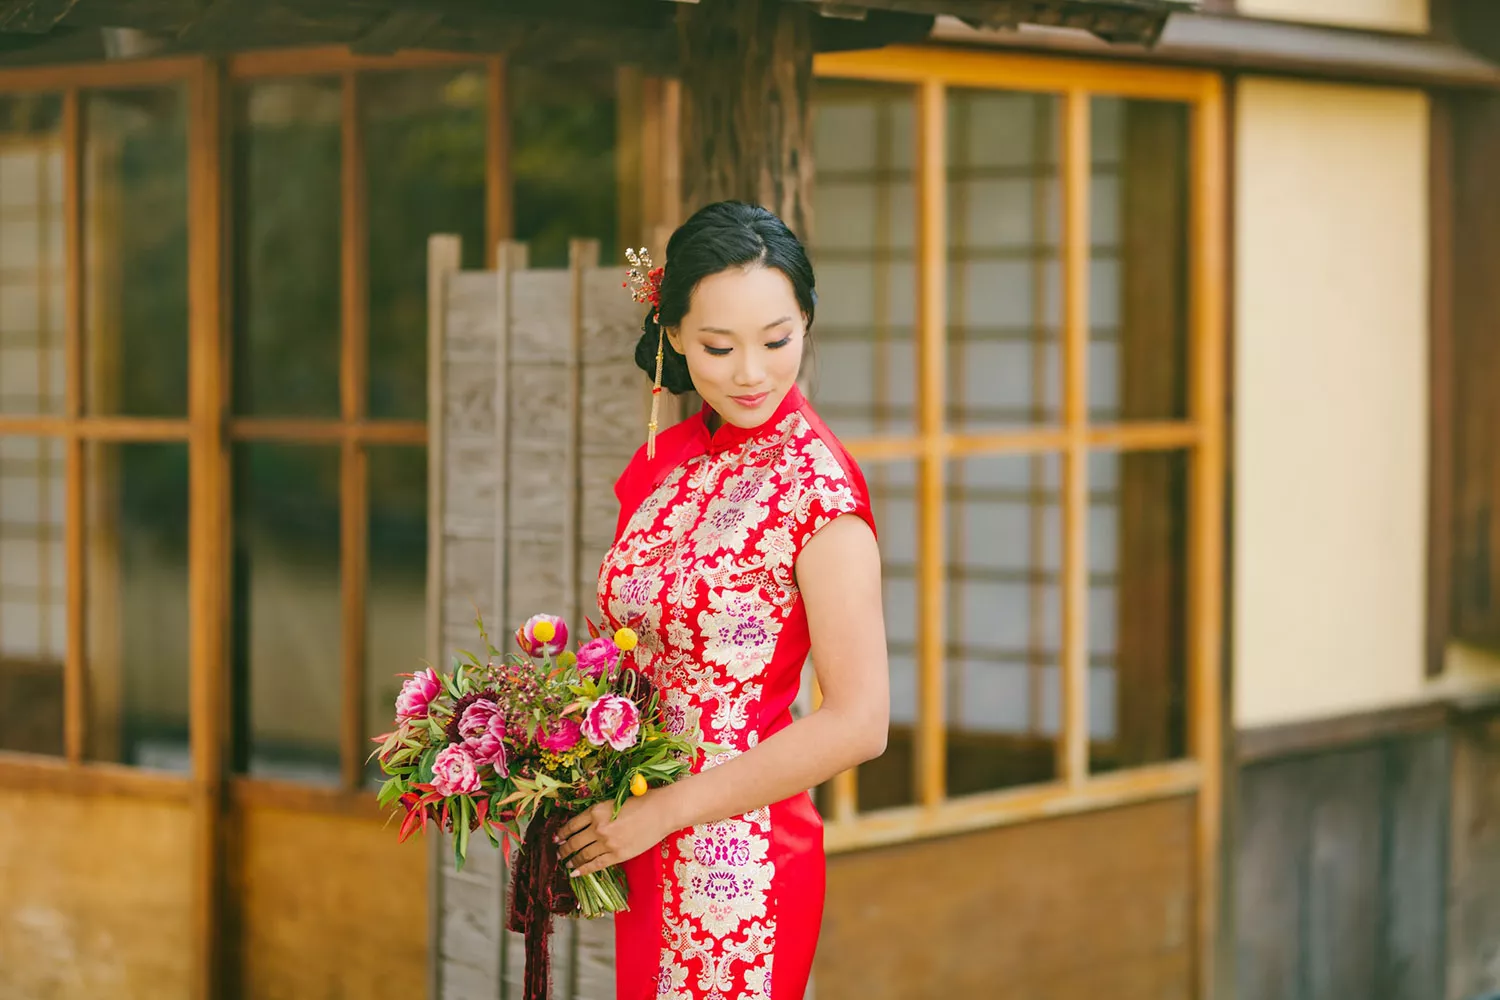 現代的紅色中式禮服是沿用明清時期的傳統。